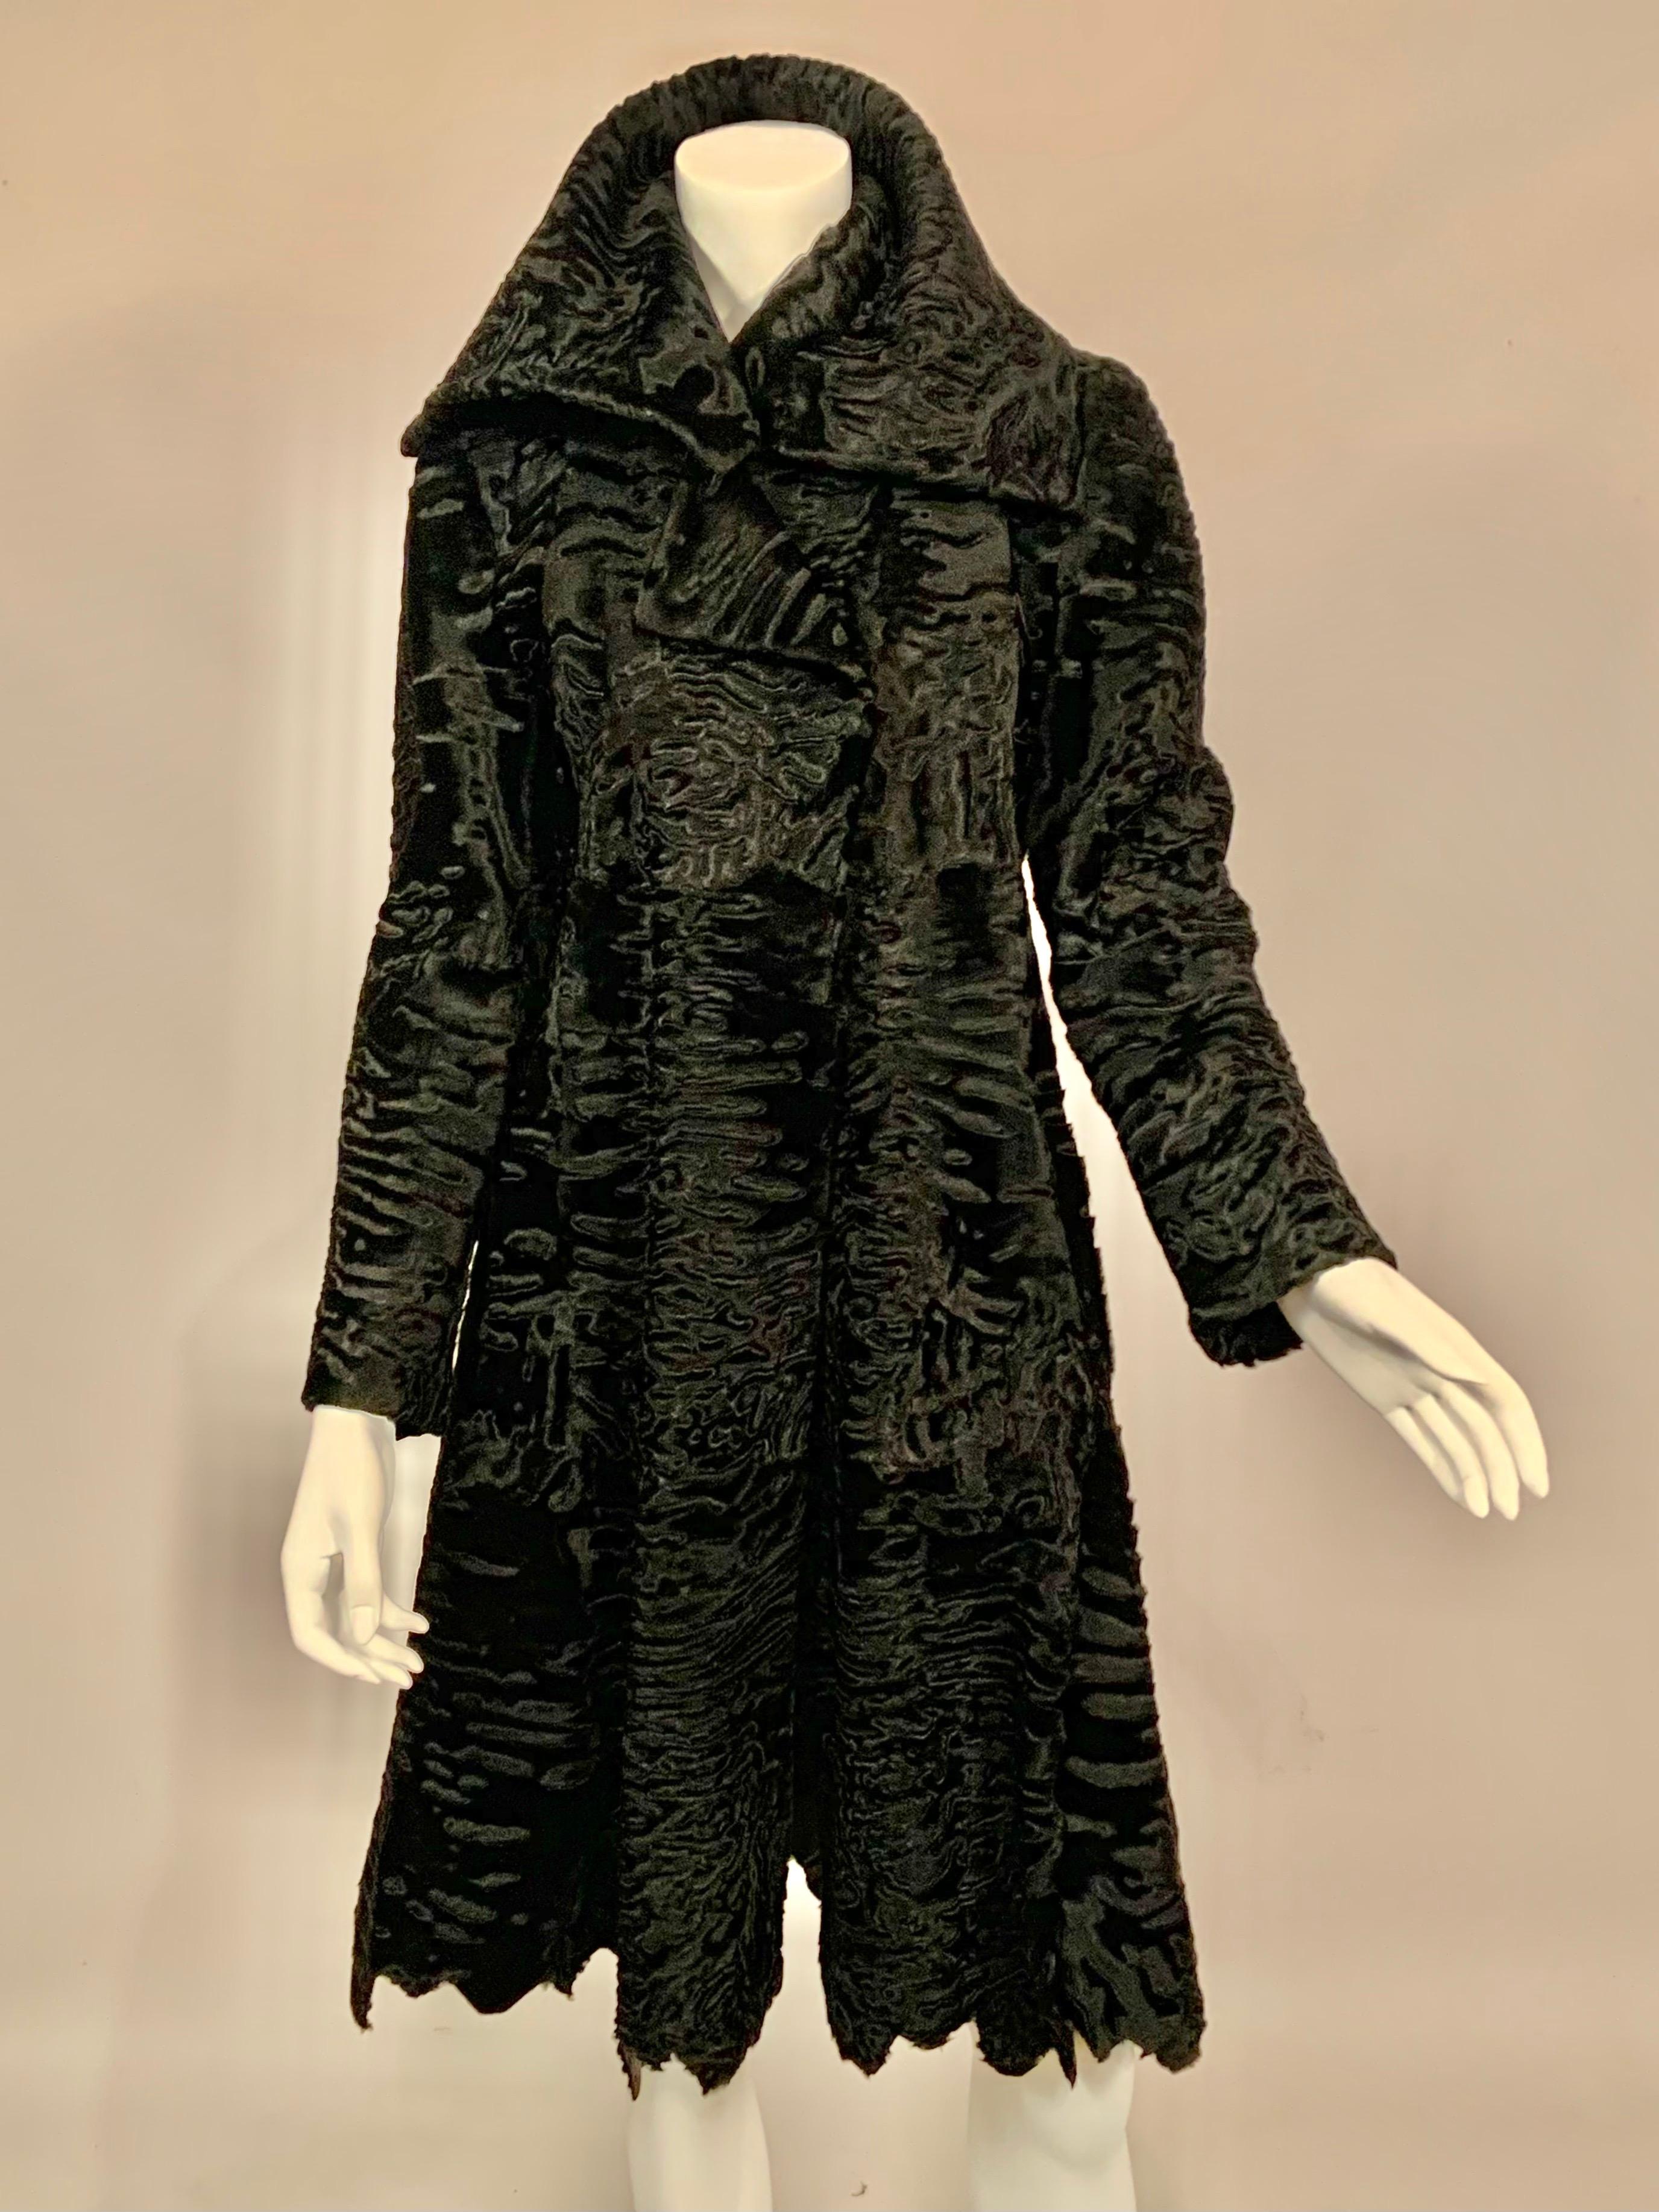 J. Mendel Black Swakara Coat Jagged Edge Hemline New Original Price Tag $23, 500 1